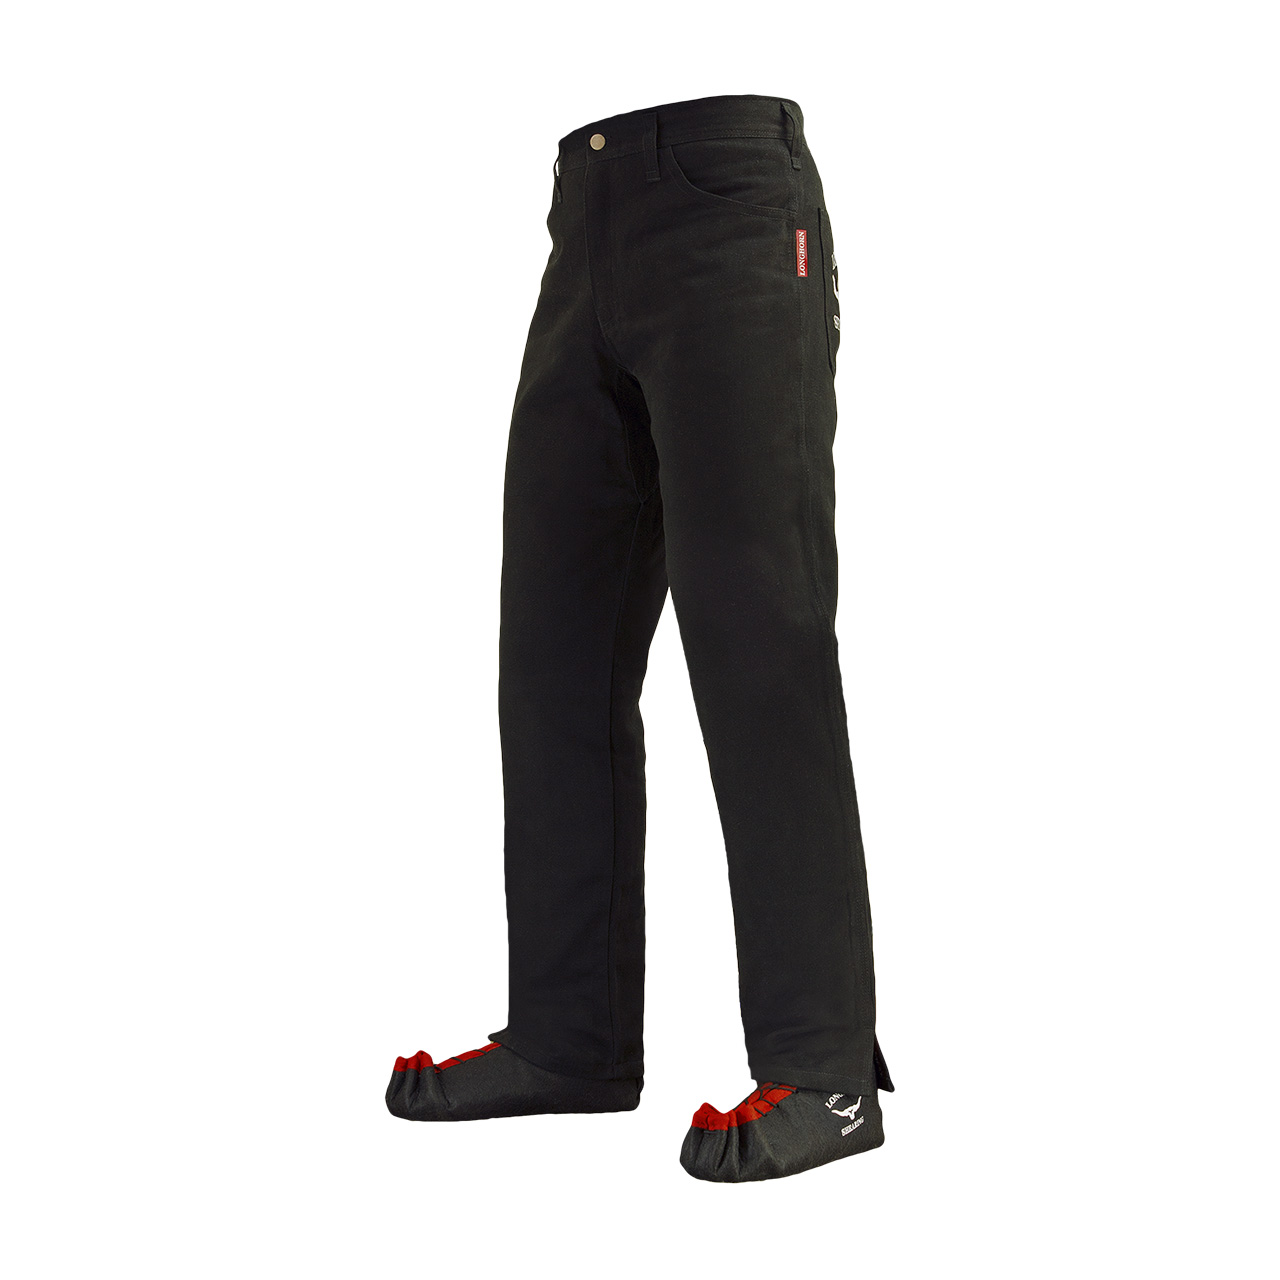 Longhorn™ kalhoty pro střihače ovcí s 2 předními kapsami velikost Stout 44/33 (8 1/4)